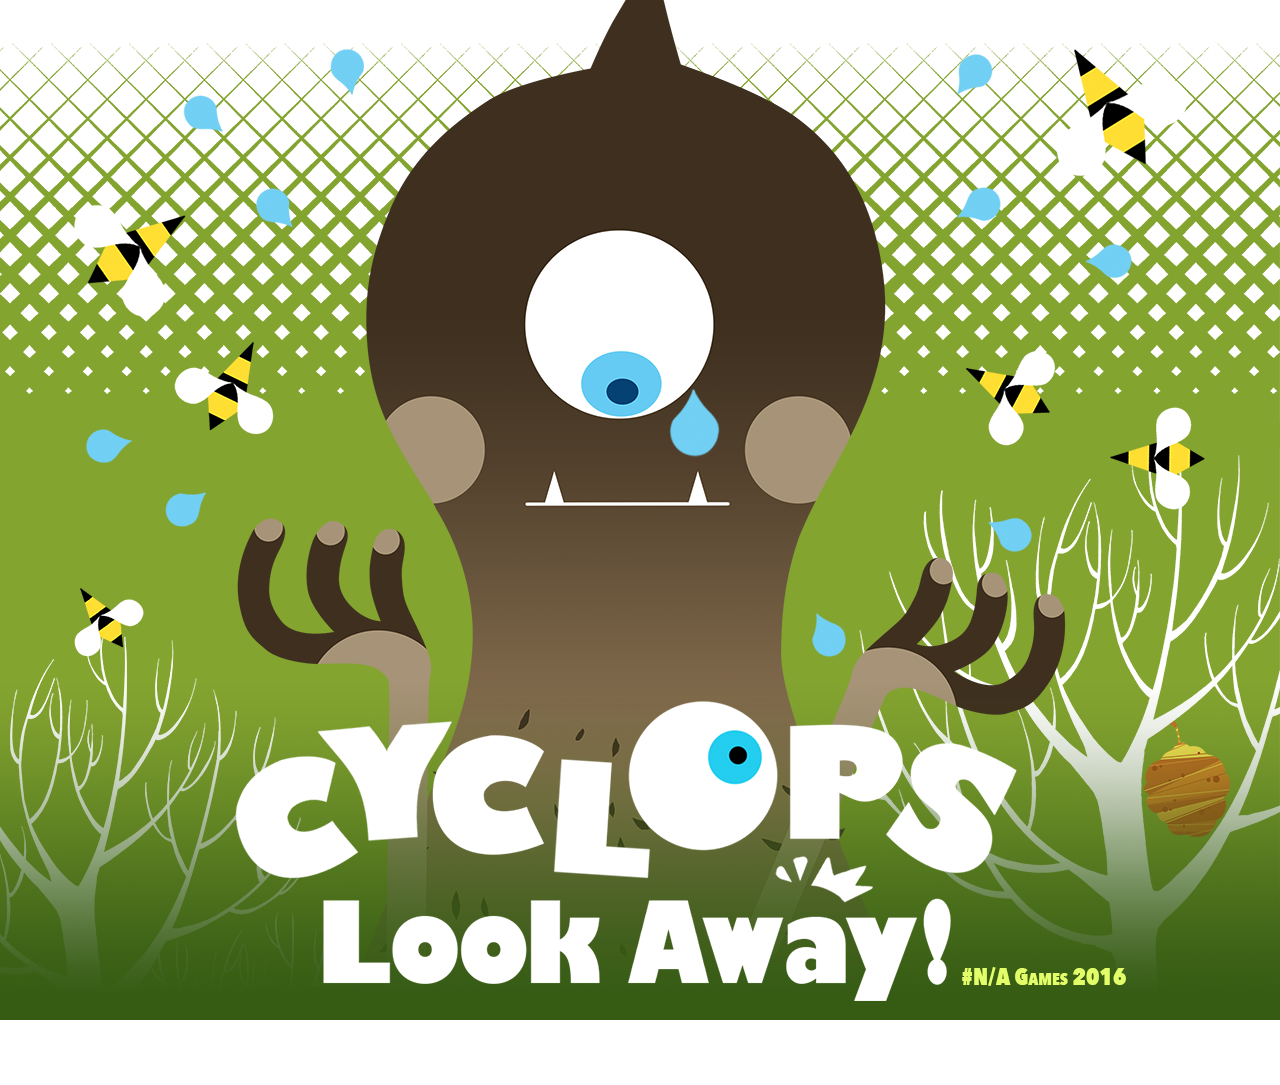 Cyclops Look Away!